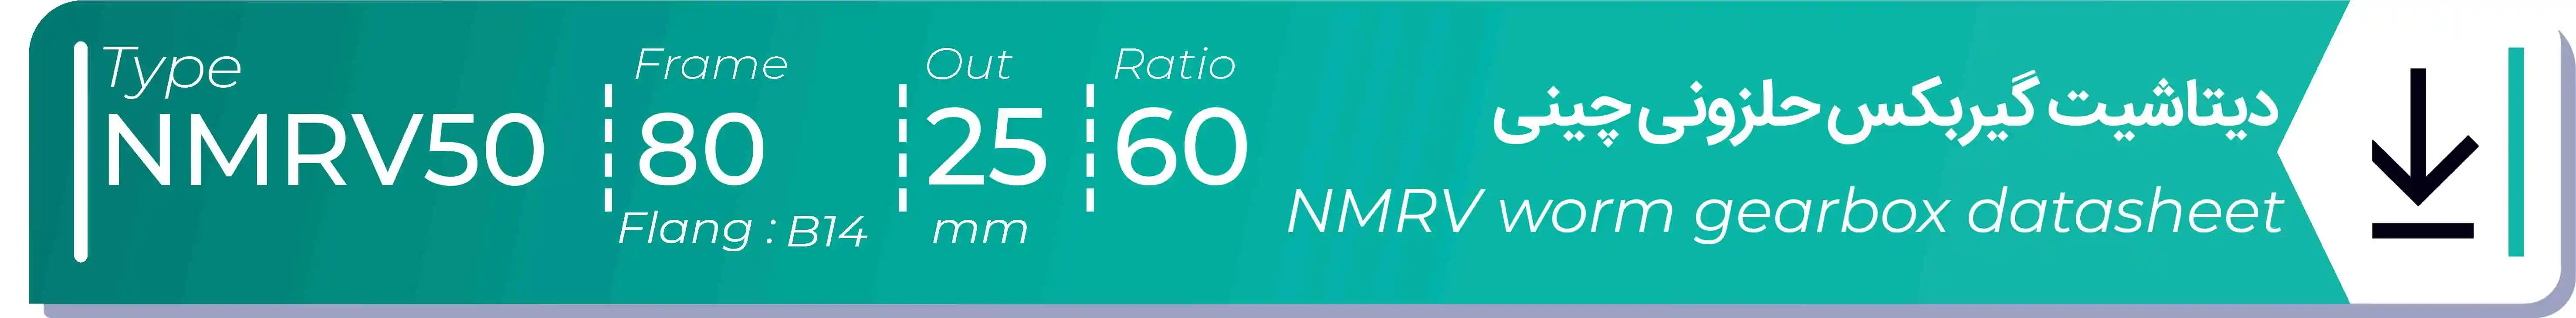  دیتاشیت و مشخصات فنی گیربکس حلزونی چینی   NMRV50  -  با خروجی 25- میلی متر و نسبت60 و فریم 80